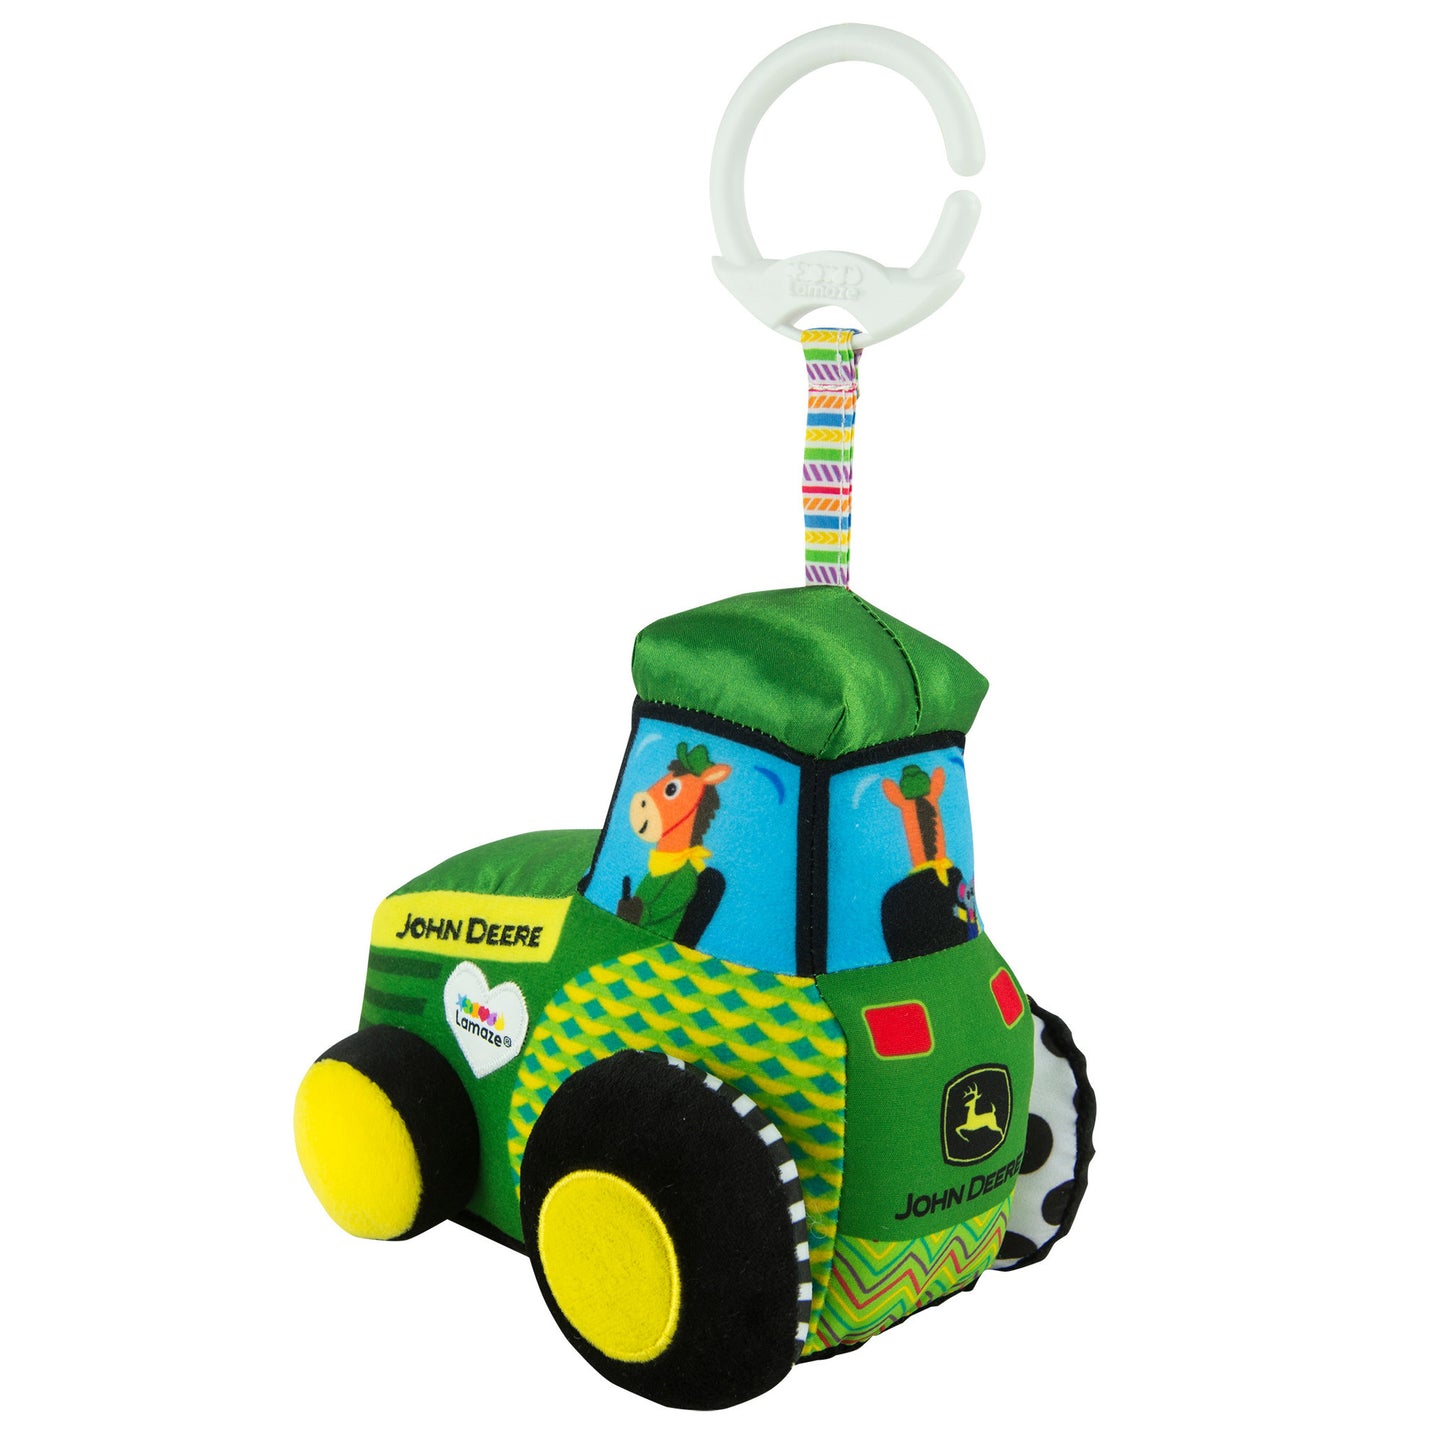 Lamaze John Deere Tractor l Baby City UK Retailer